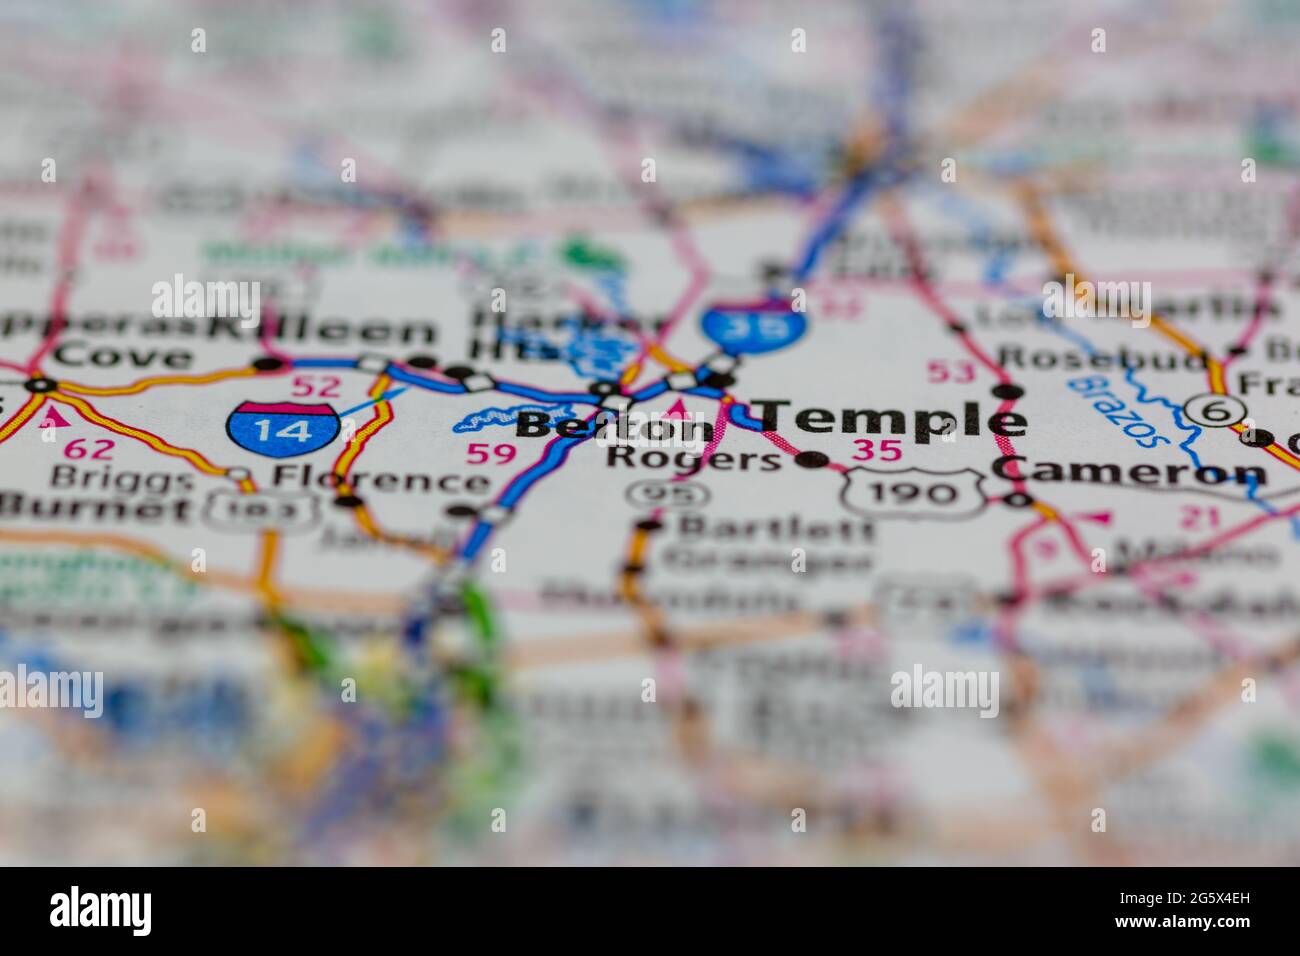 Belton Texas USA indiqué sur une carte de géographie ou une carte routière Banque D'Images